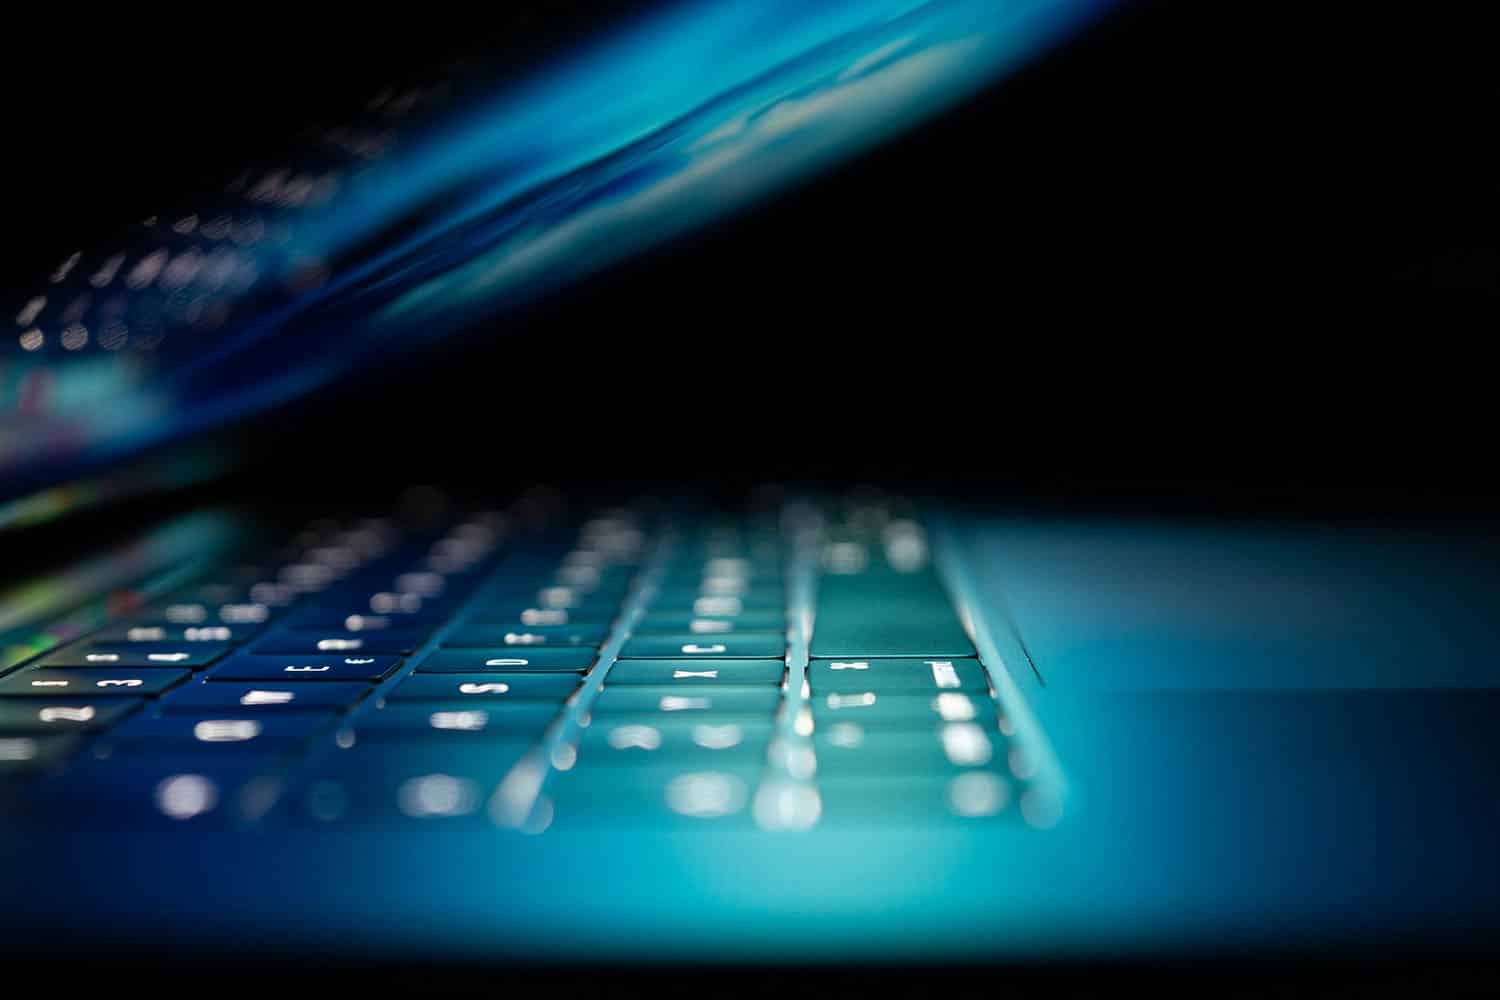 computer keyboard glowing in blue light